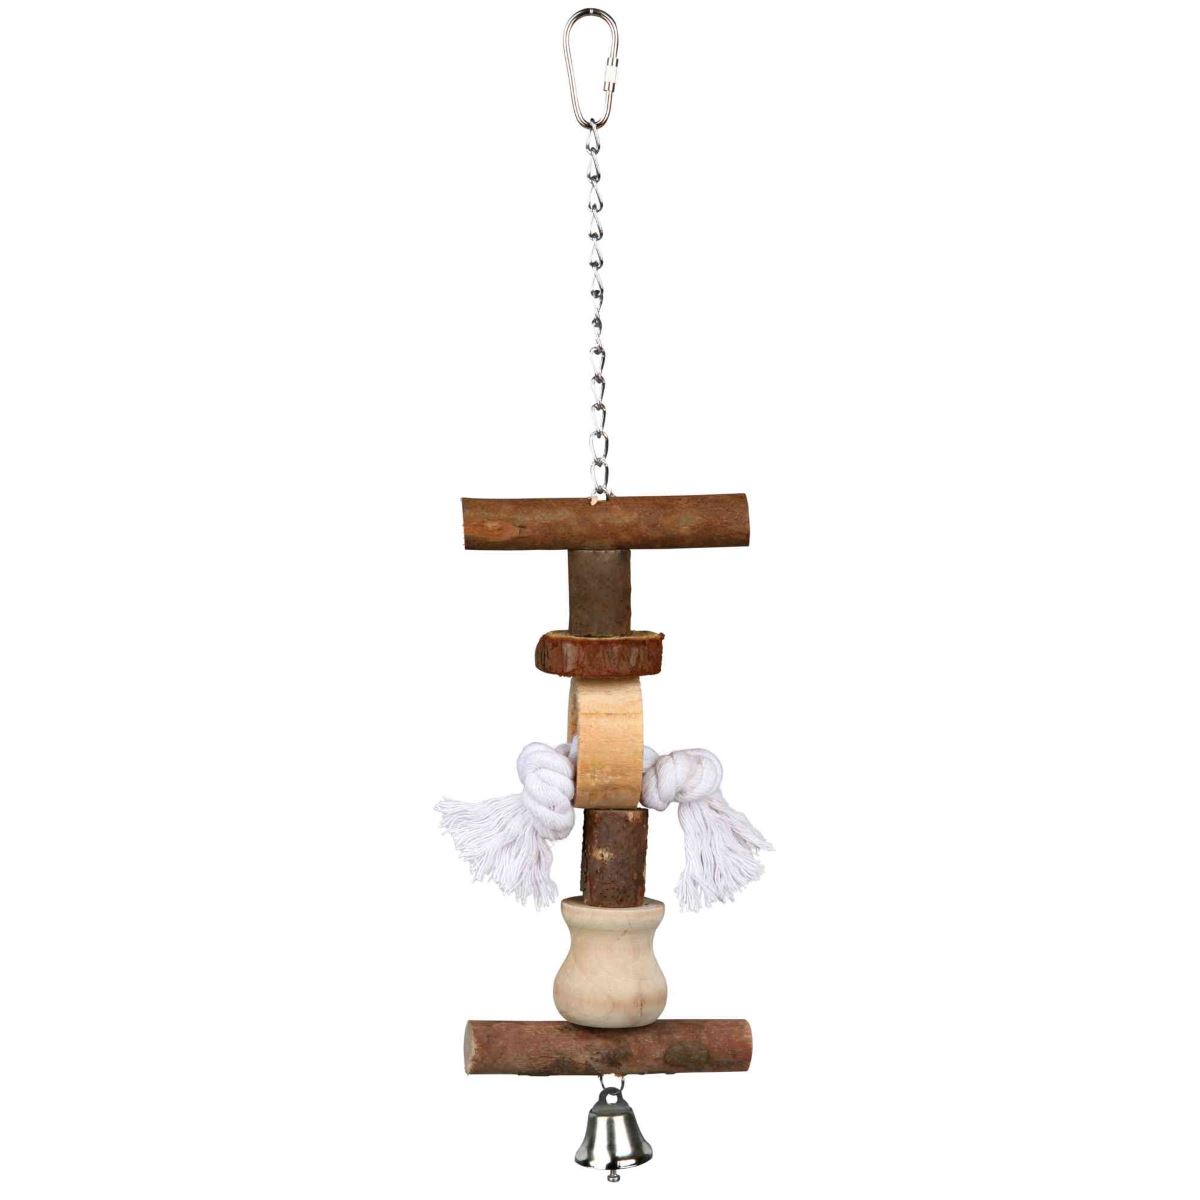 Игрушка для птиц с колокольчиком и веревочкой, 38 см, Trixie (58962)